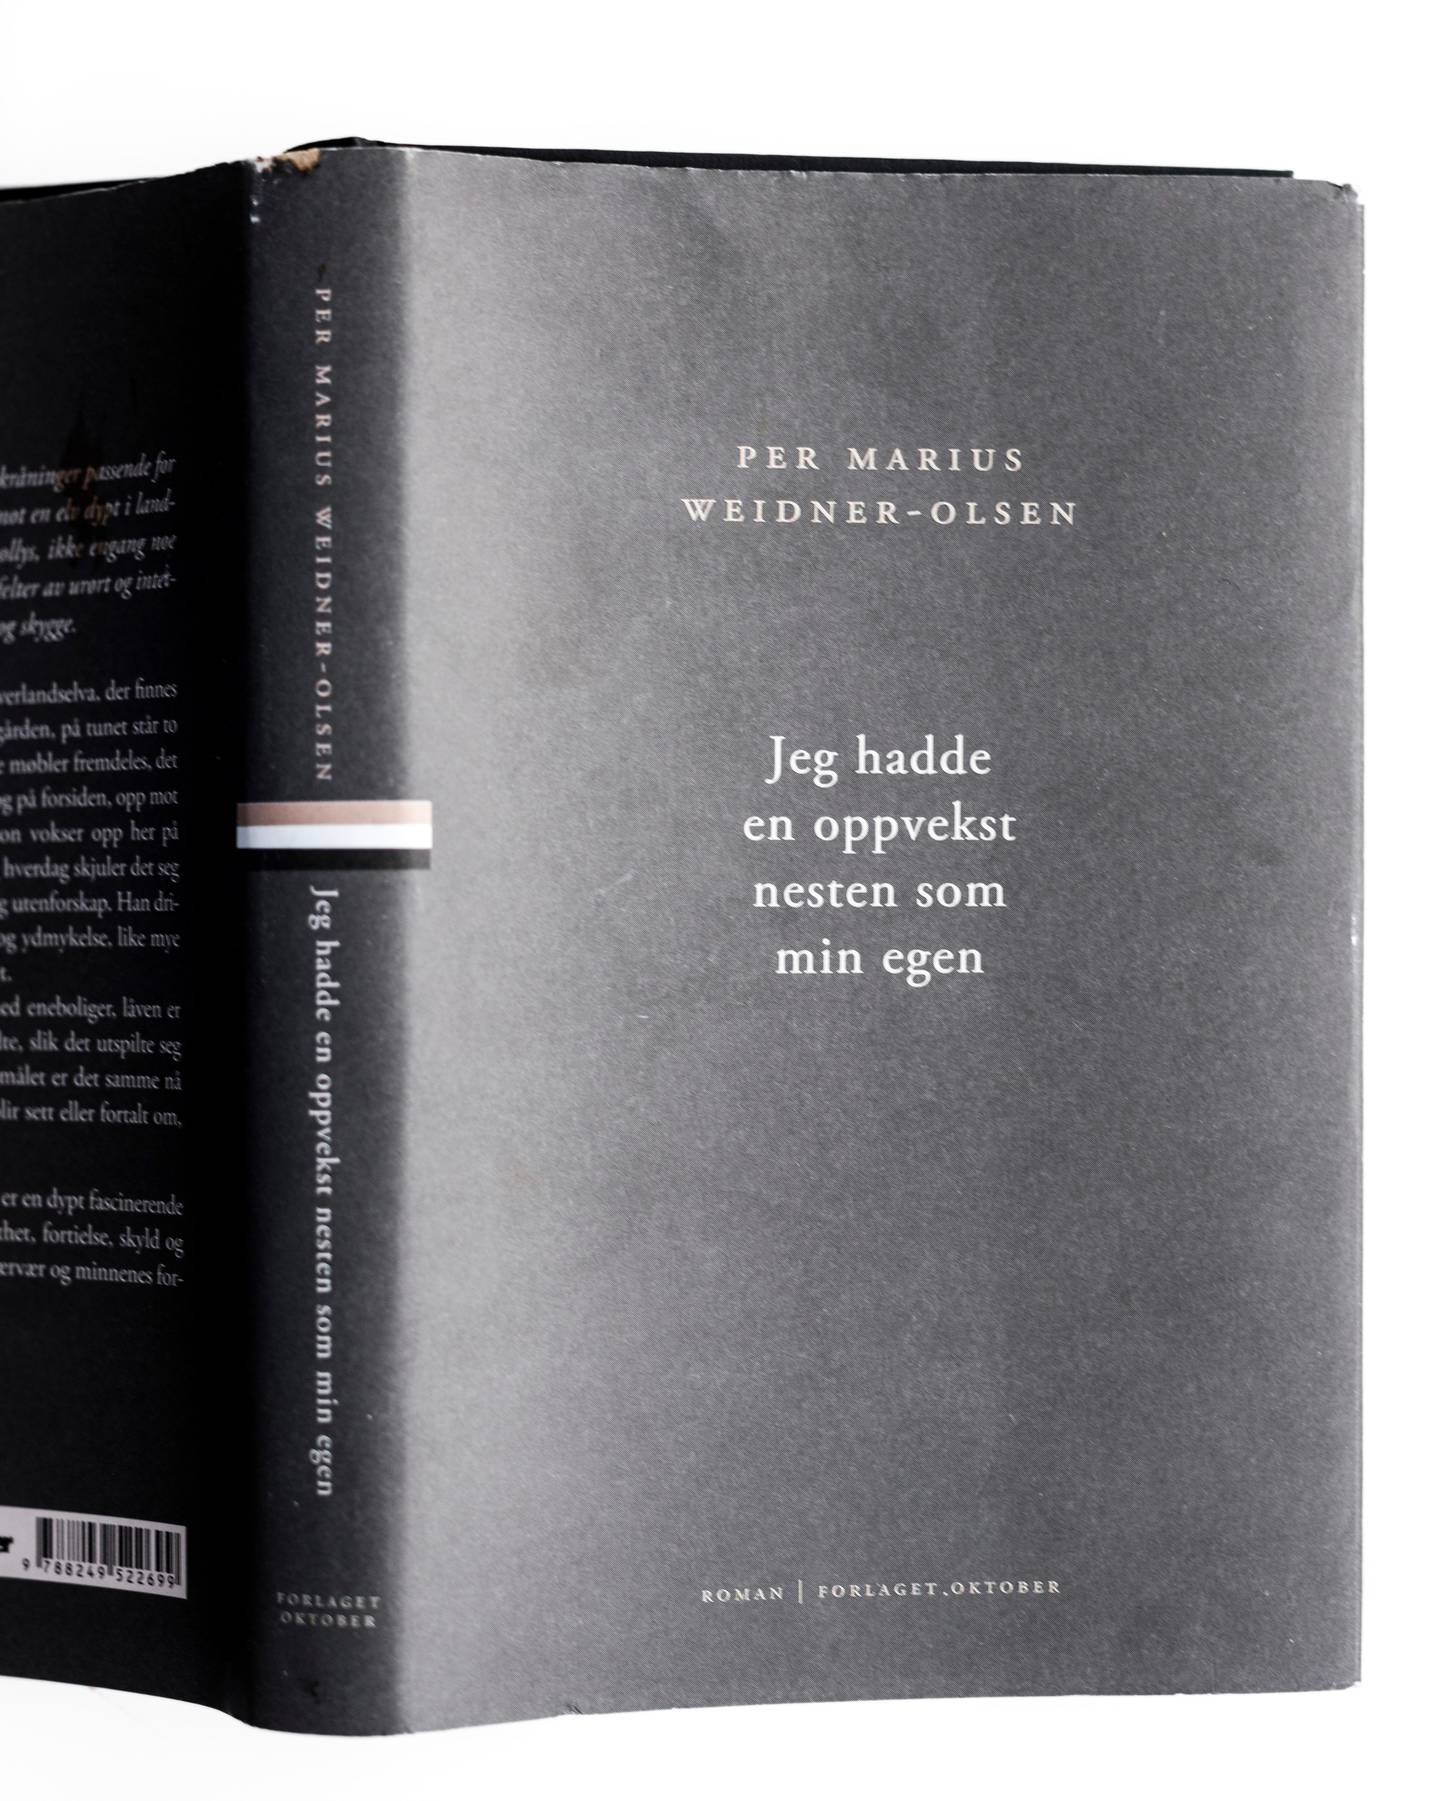 Per Marius Weidner-Olsens debutroman høstet gode kritikker i sommer. Da forlaget ble kjent med en straffedom fra 2003, avsluttet de samarbeidet.